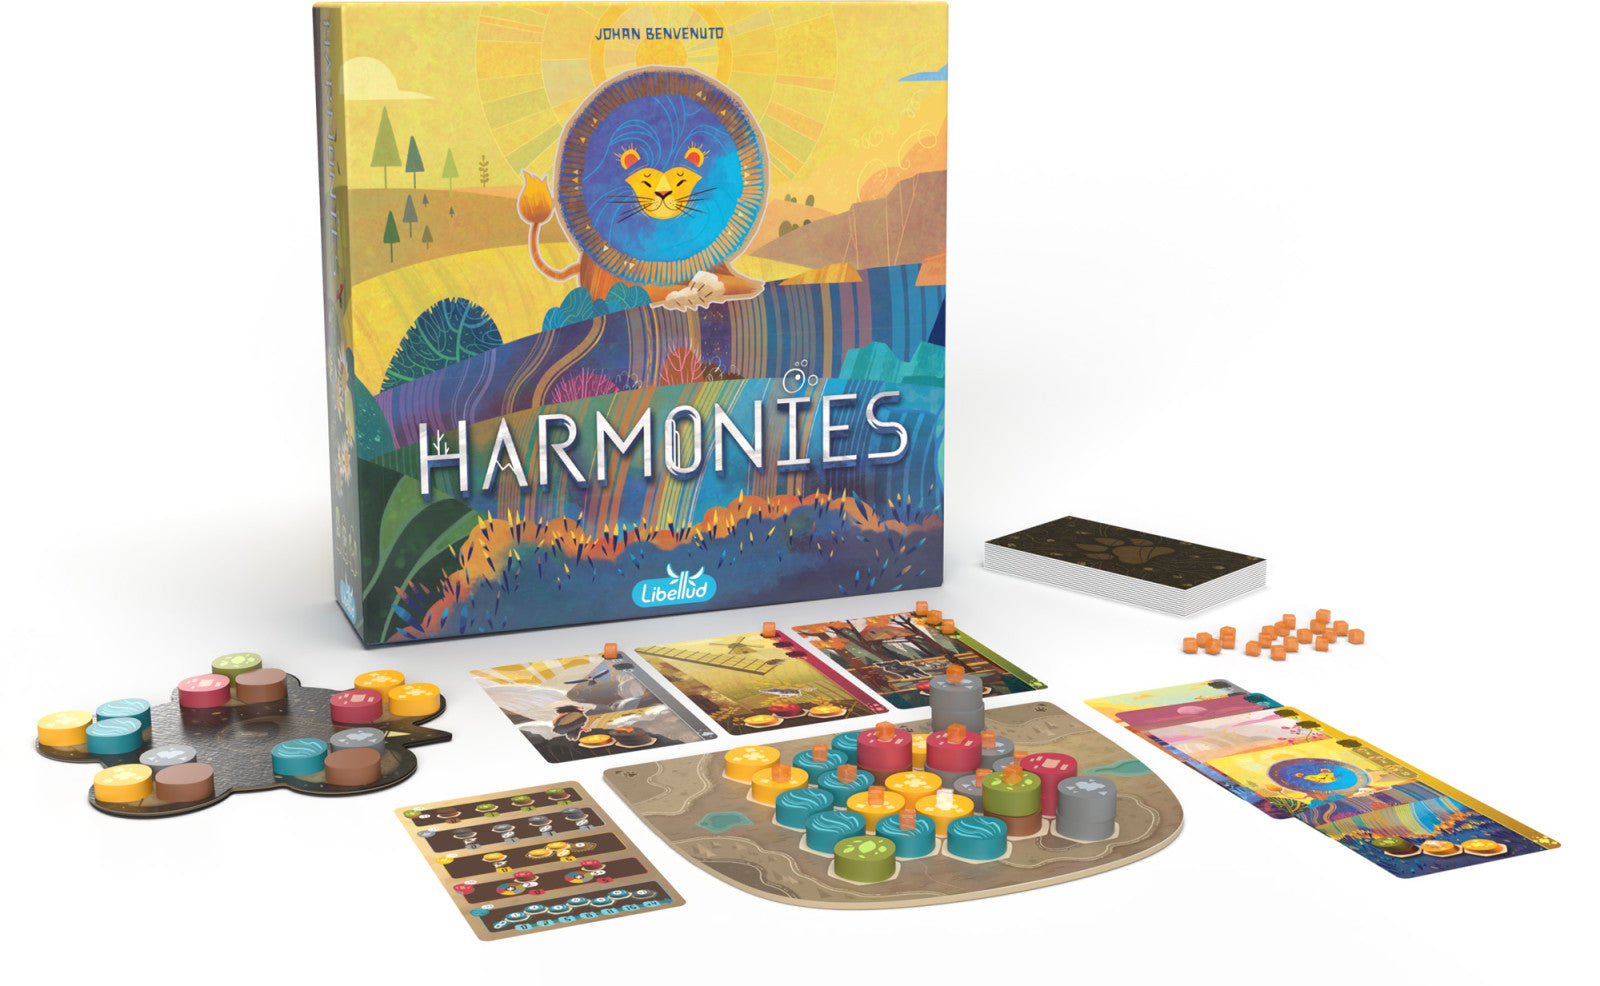 Harmonies components